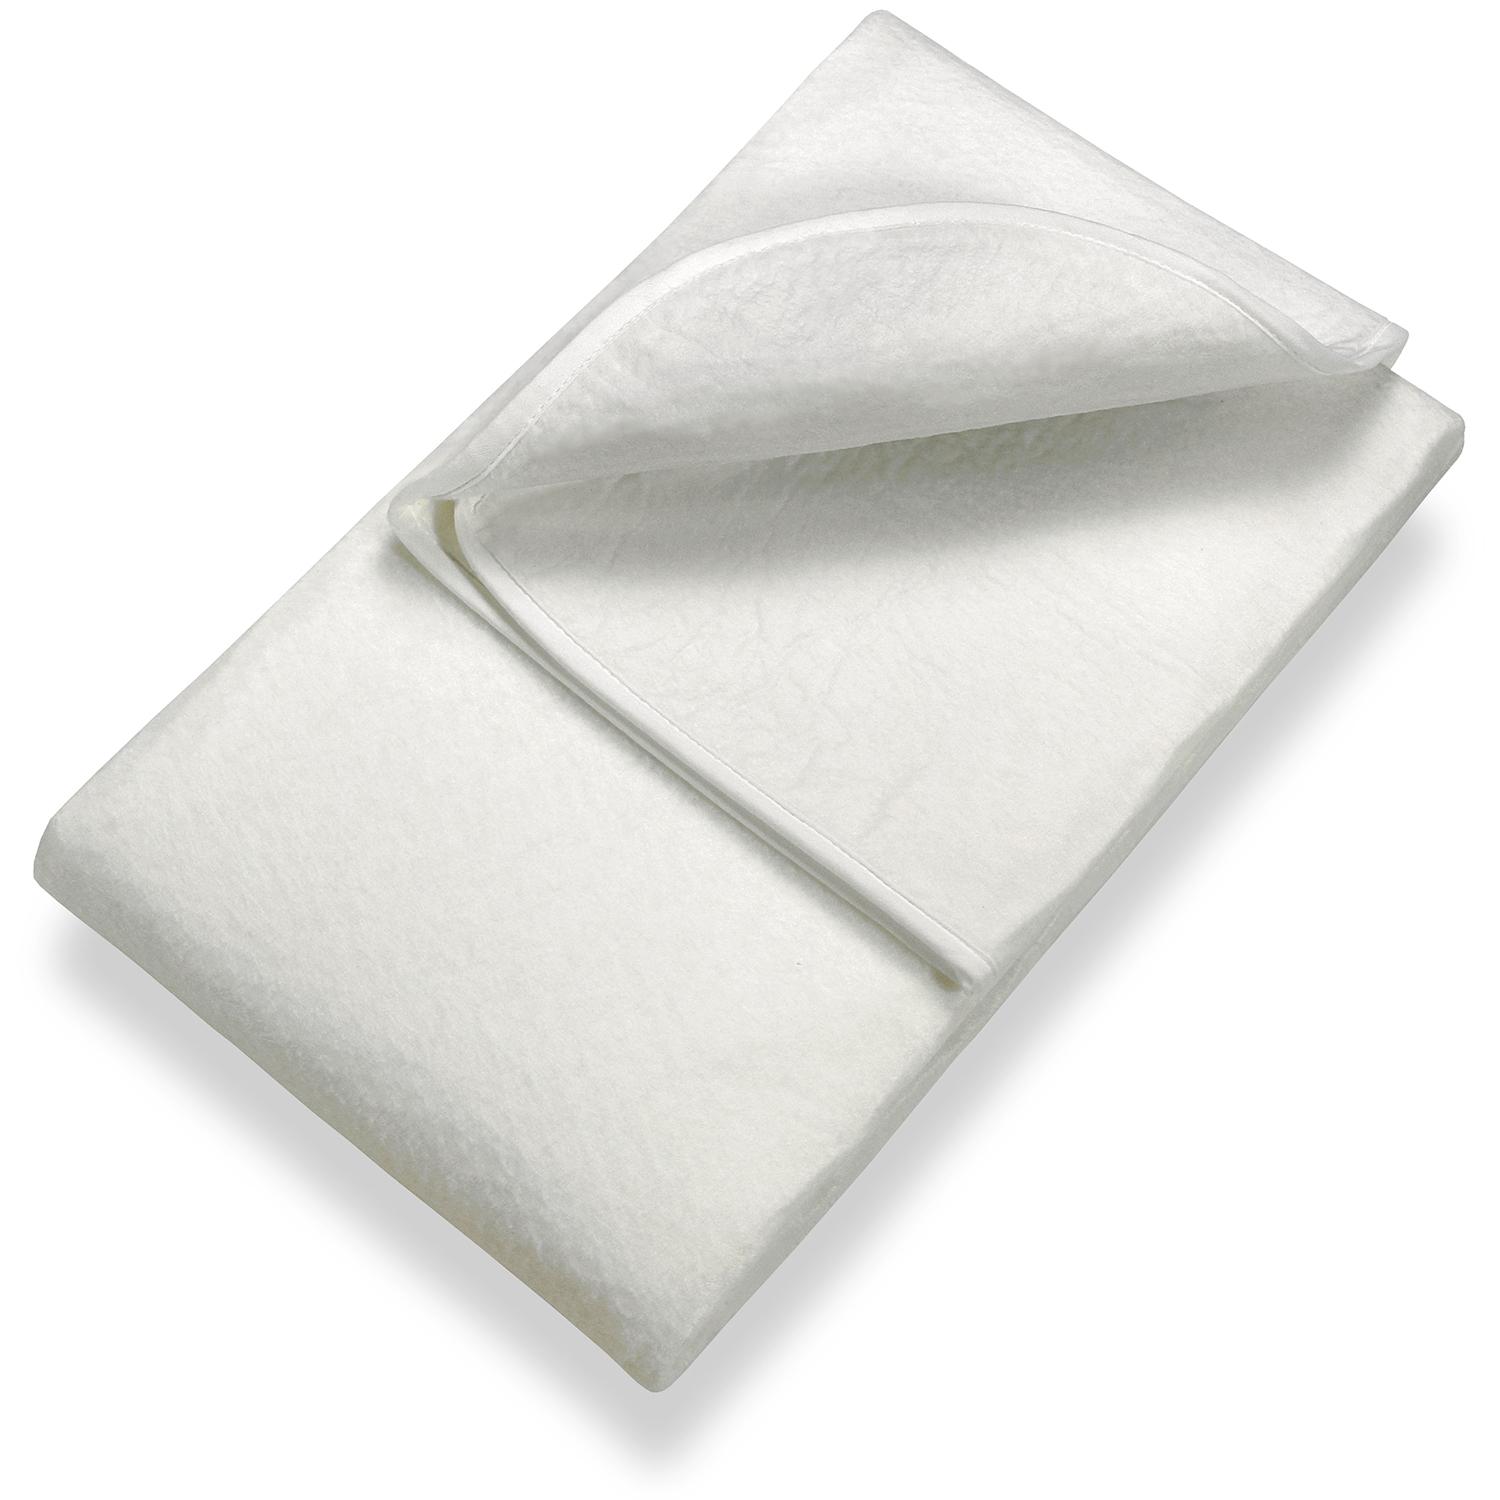 Sleezzz Basic, protège-matelas en feutre aiguilleté 120 x 200 cm, à poser sur le sommier, blanc